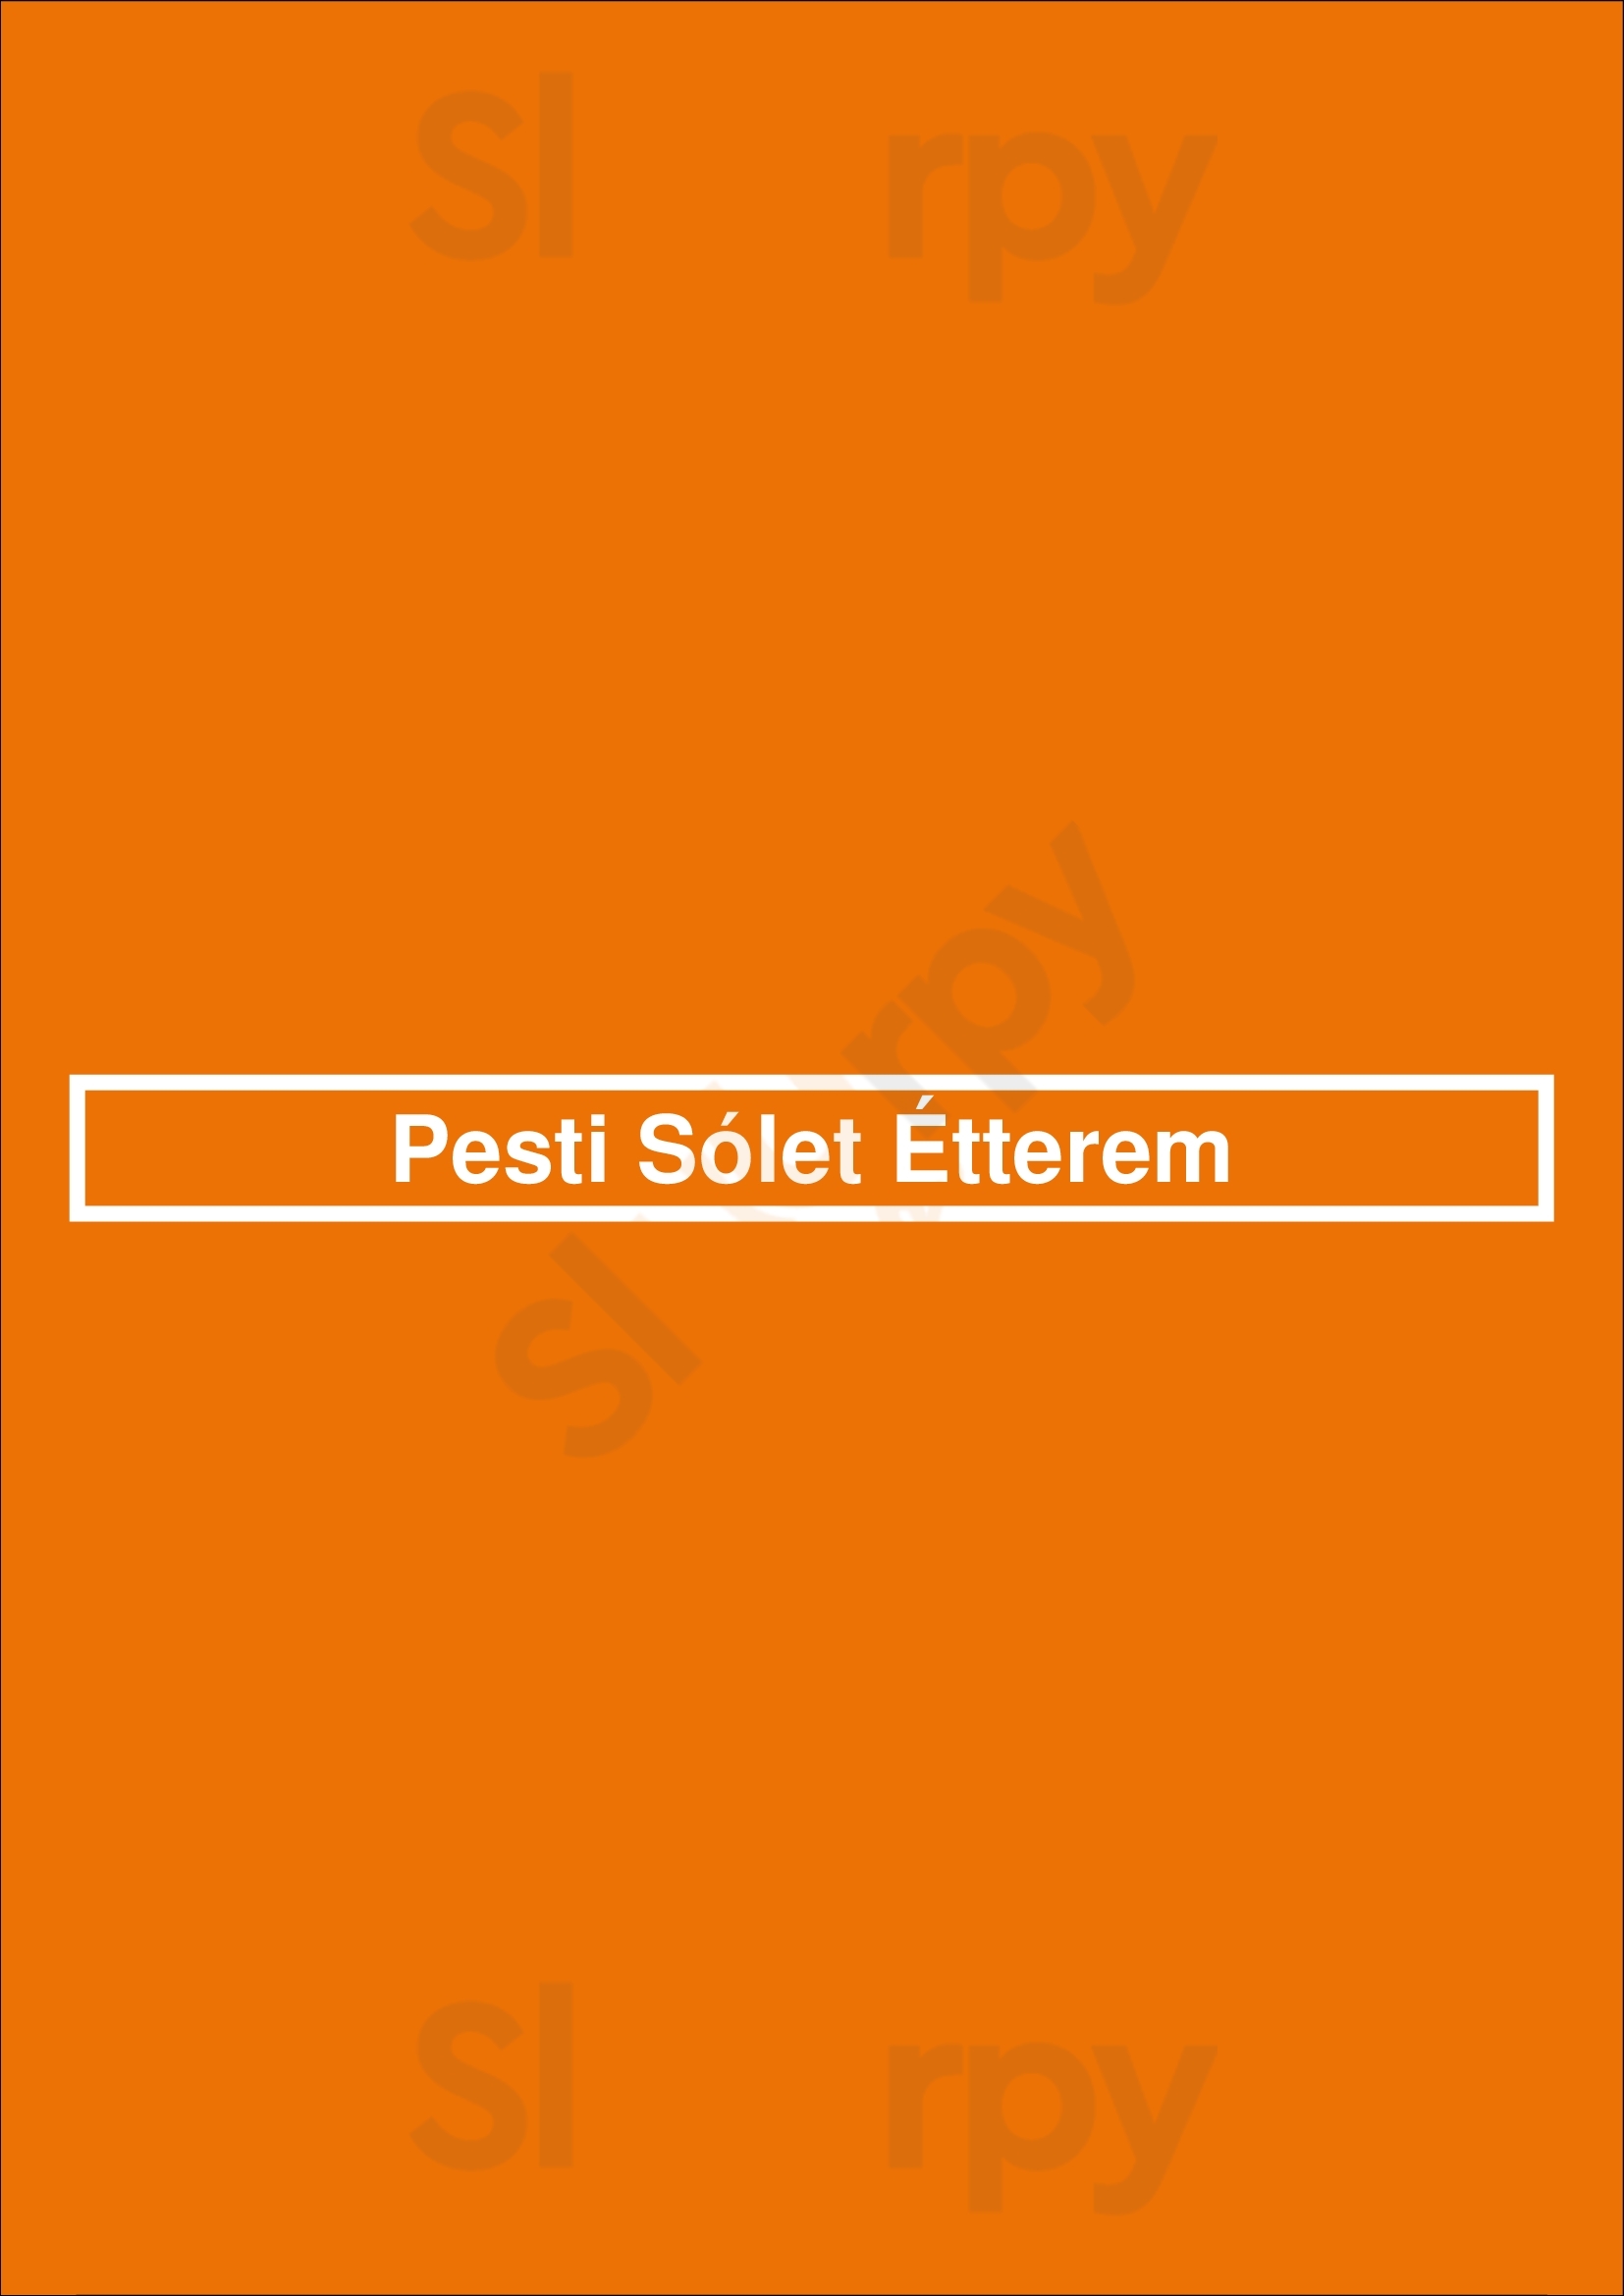 Pesti Sólet Étterem Budapest Menu - 1